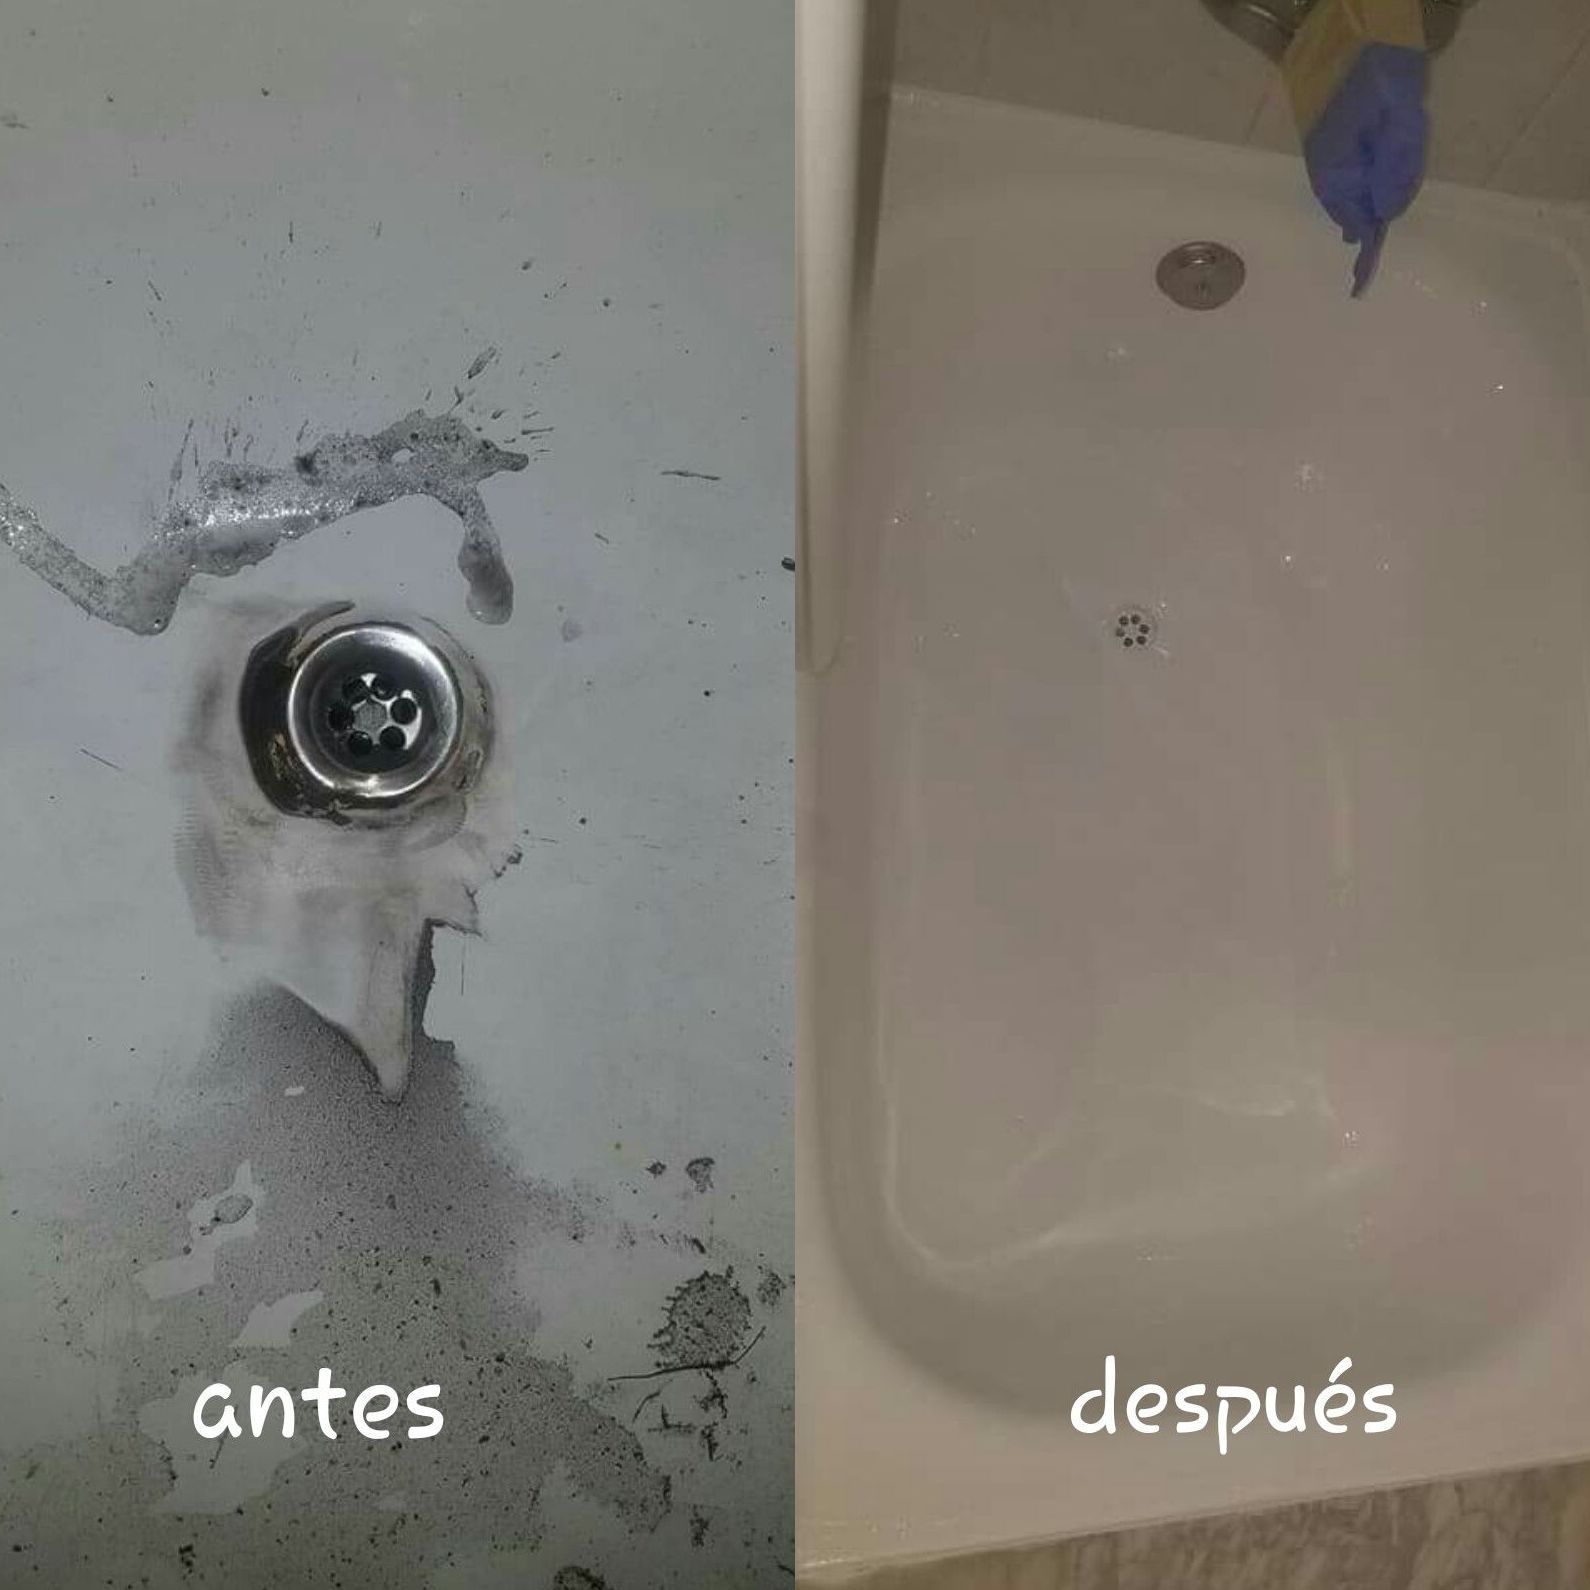 Foto 19 de Restauración de bañeras y encimeras en Barcelona en  | Doctor Bañera Reparación y Esmaltado